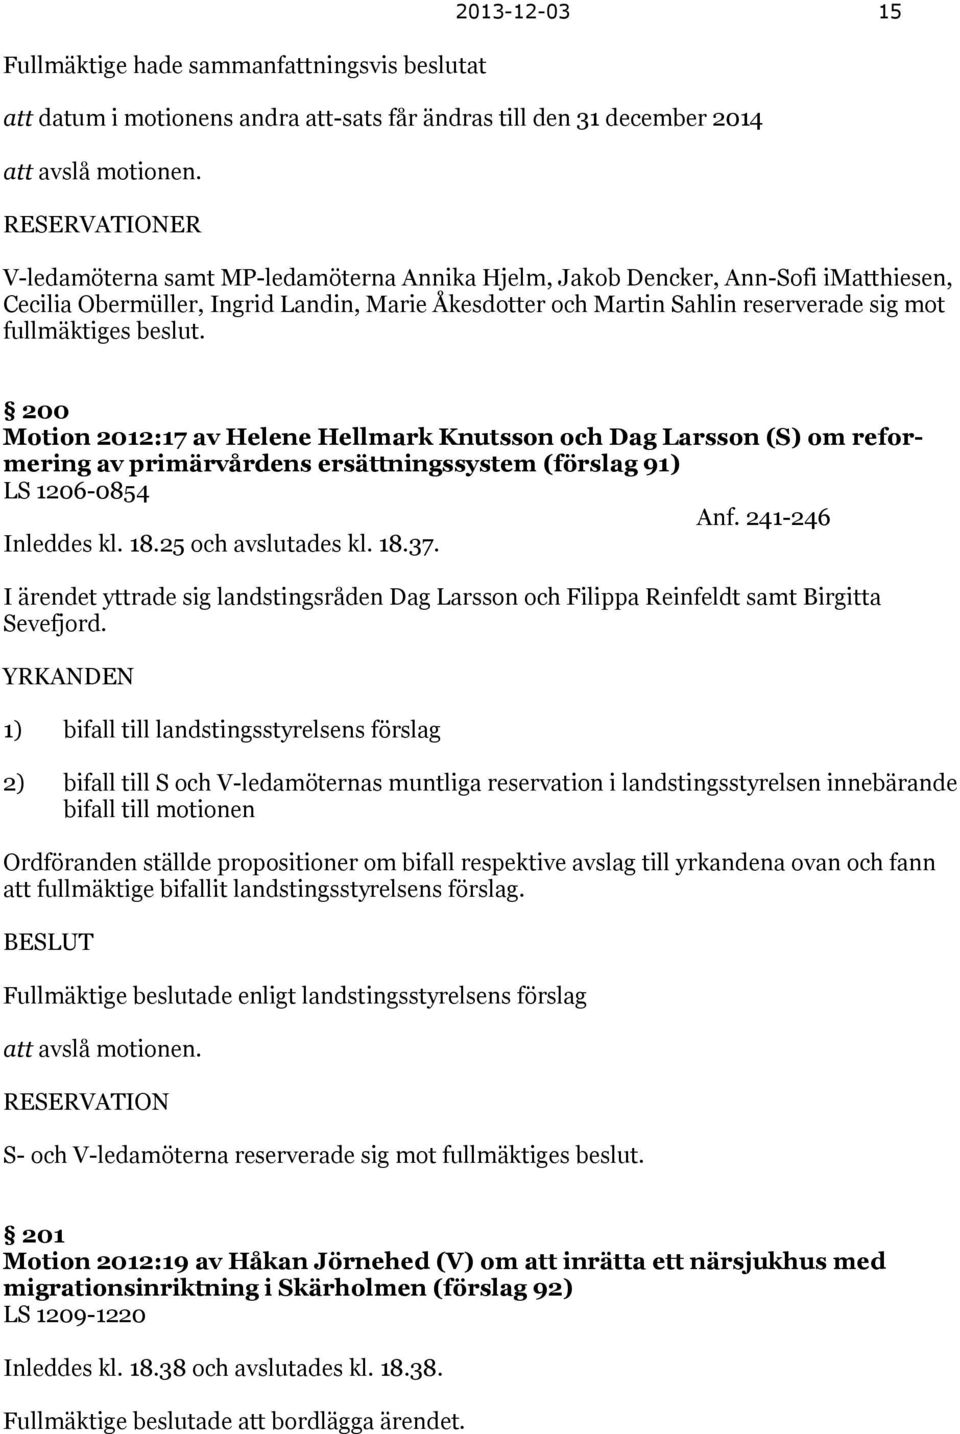 fullmäktiges beslut. 200 Motion 2012:17 av Helene Hellmark Knutsson och Dag Larsson (S) om reformering av primärvårdens ersättningssystem (förslag 91) LS 1206-0854 Anf. 241-246 Inleddes kl. 18.